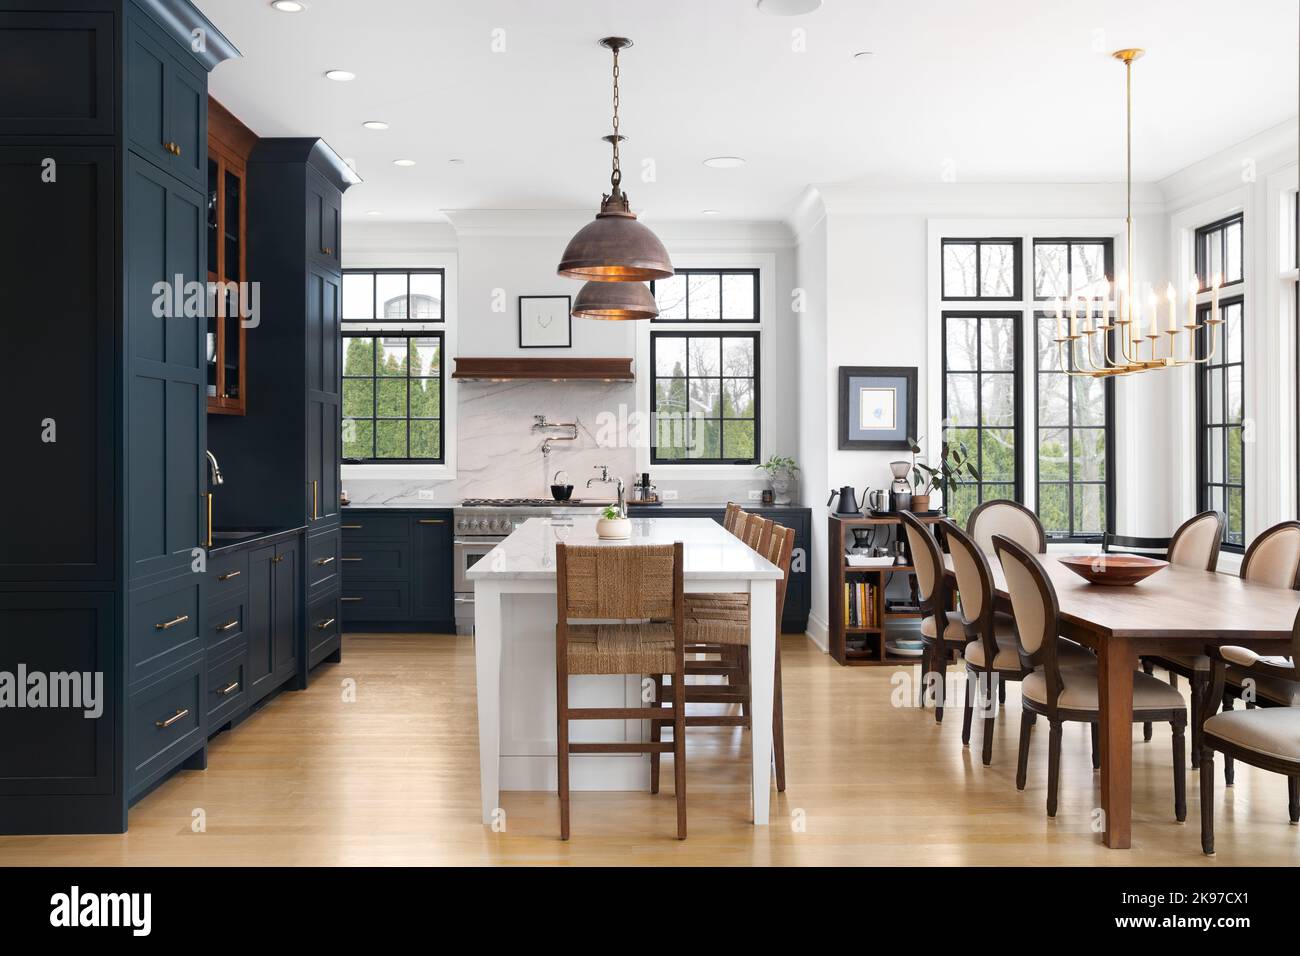 Eine luxuriöse Küche mit blauen Schränken, bronzefarbenen Deckenleuchten über der großen weißen Insel und luxuriösen Geräten. Stockfoto